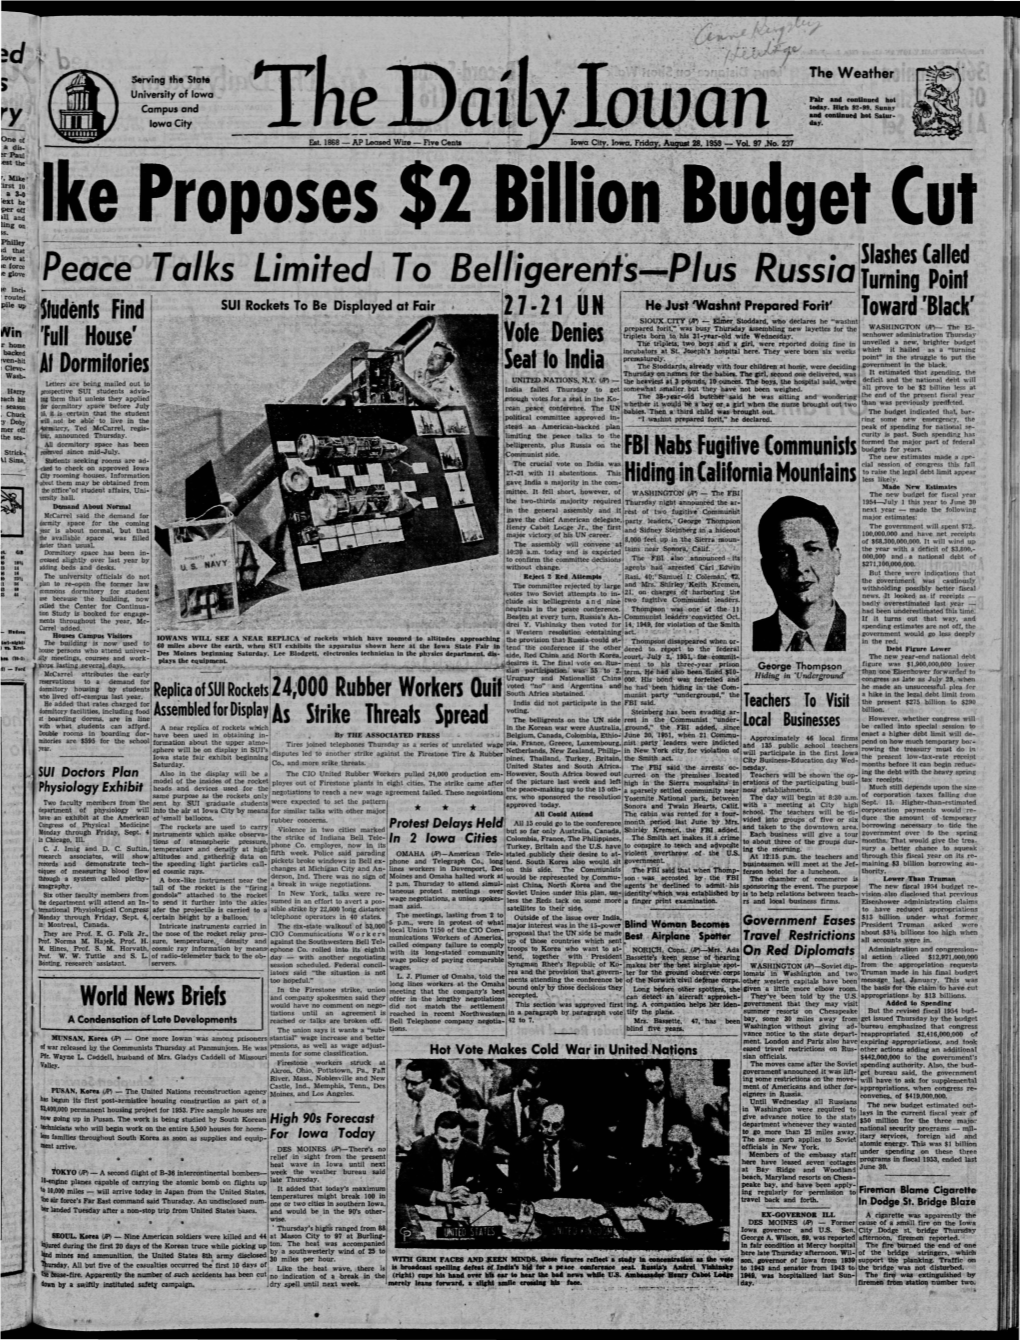 Daily Iowan (Iowa City, Iowa), 1953-08-28